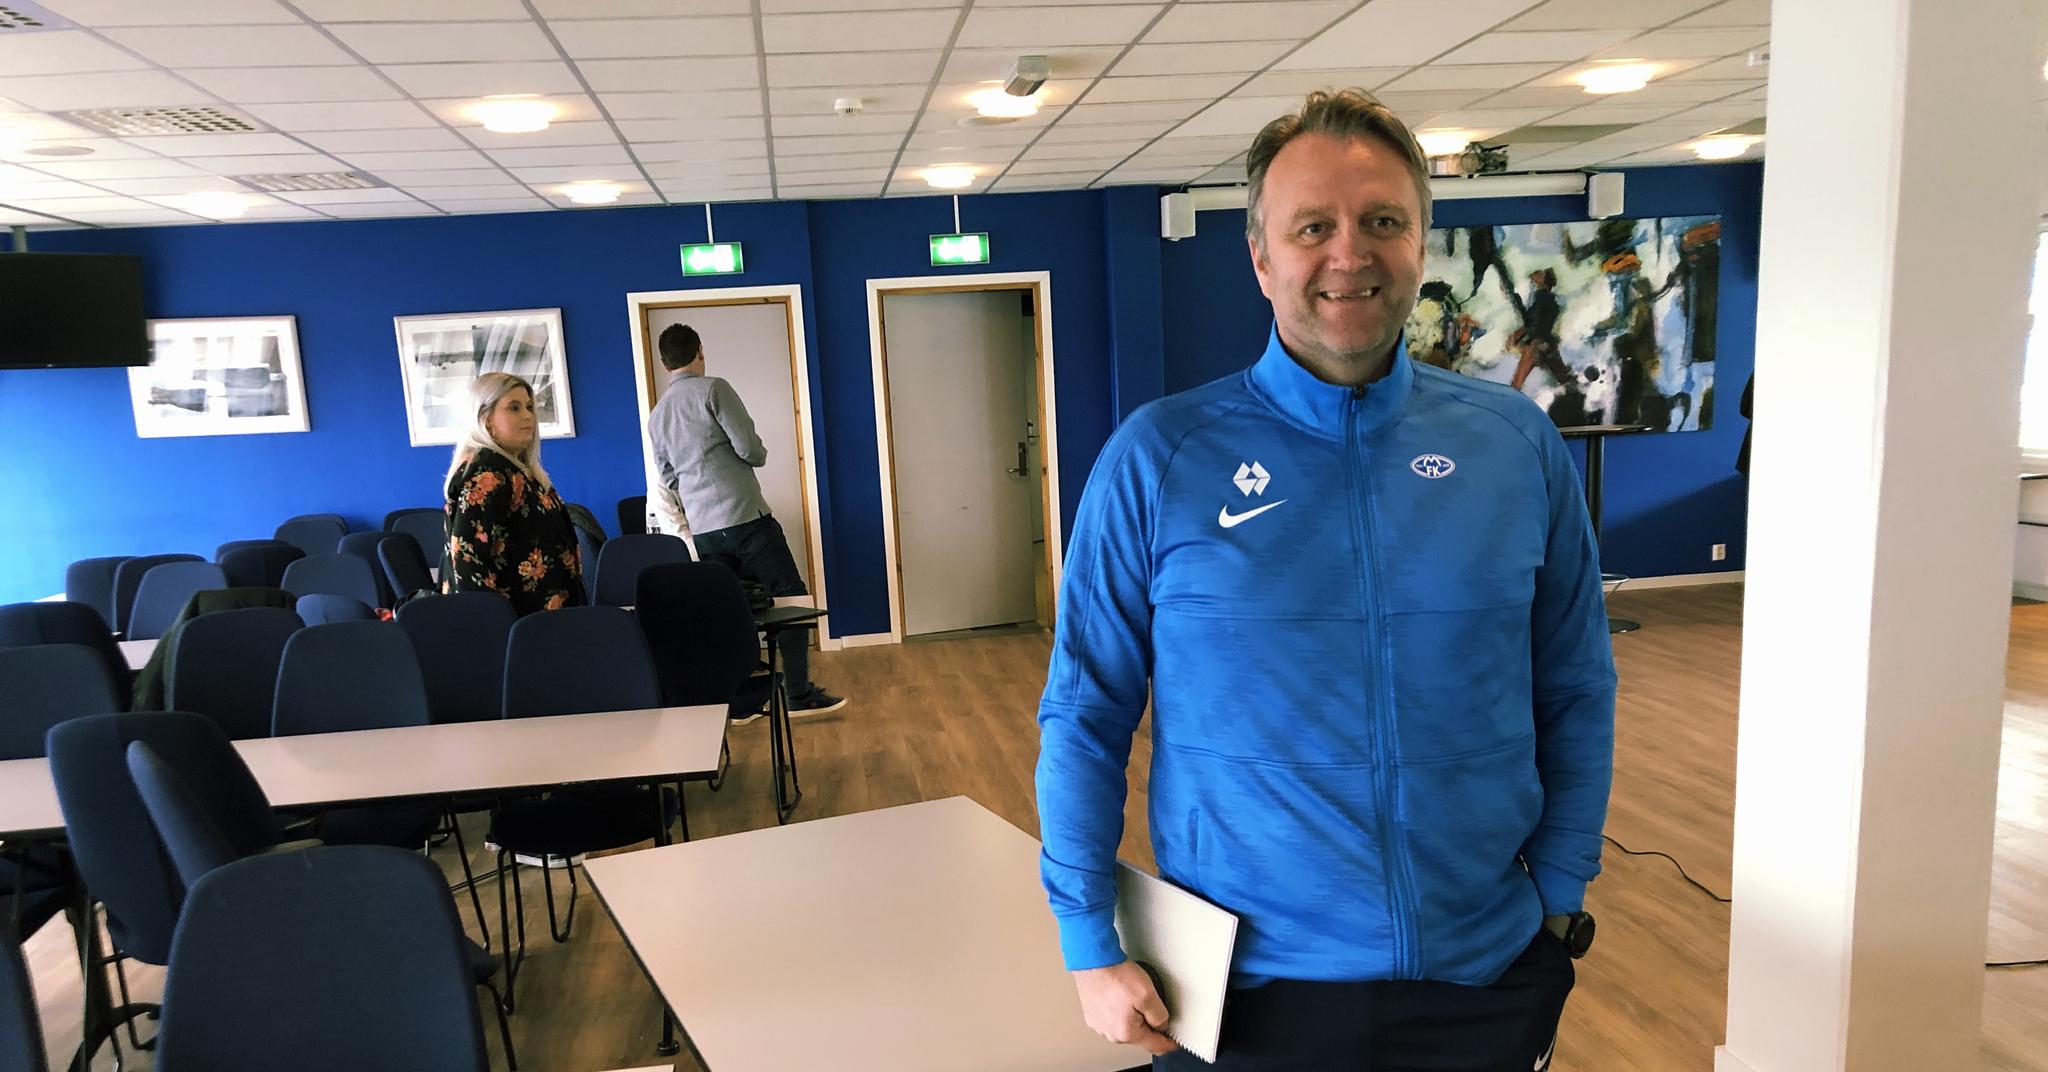 KLAR TALE: Erling Moe mener Norges Fotballforbund bør avlyse årets NM dersom seriestarten blir utsatt til sommeren.